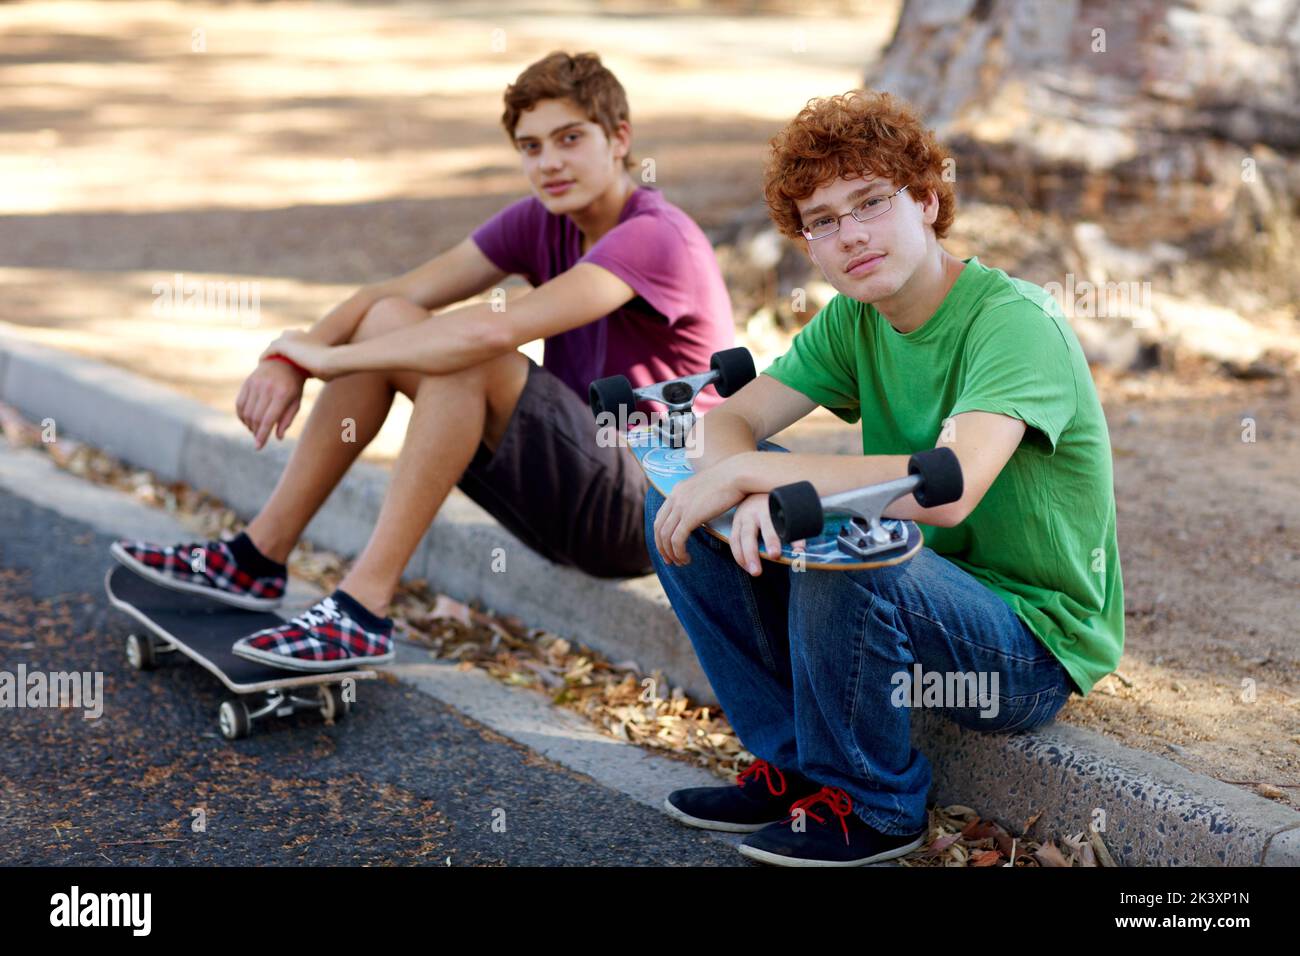 Le week-end, c'est froid. Portrait de deux adolescents assis sur un trottoir avec leurs planches à roulettes. Banque D'Images